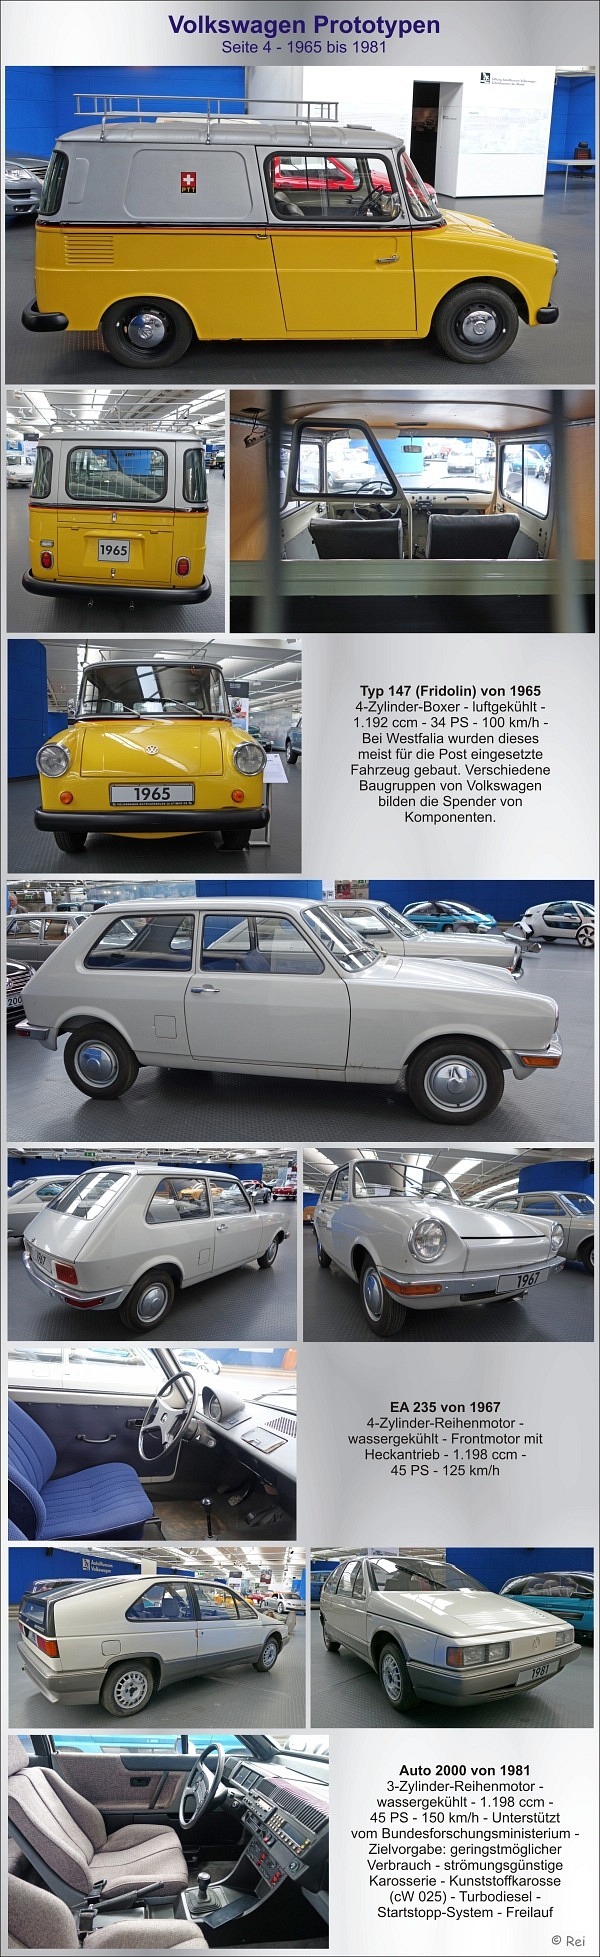 VW Prototypen - Seite 4 - 1965-1981